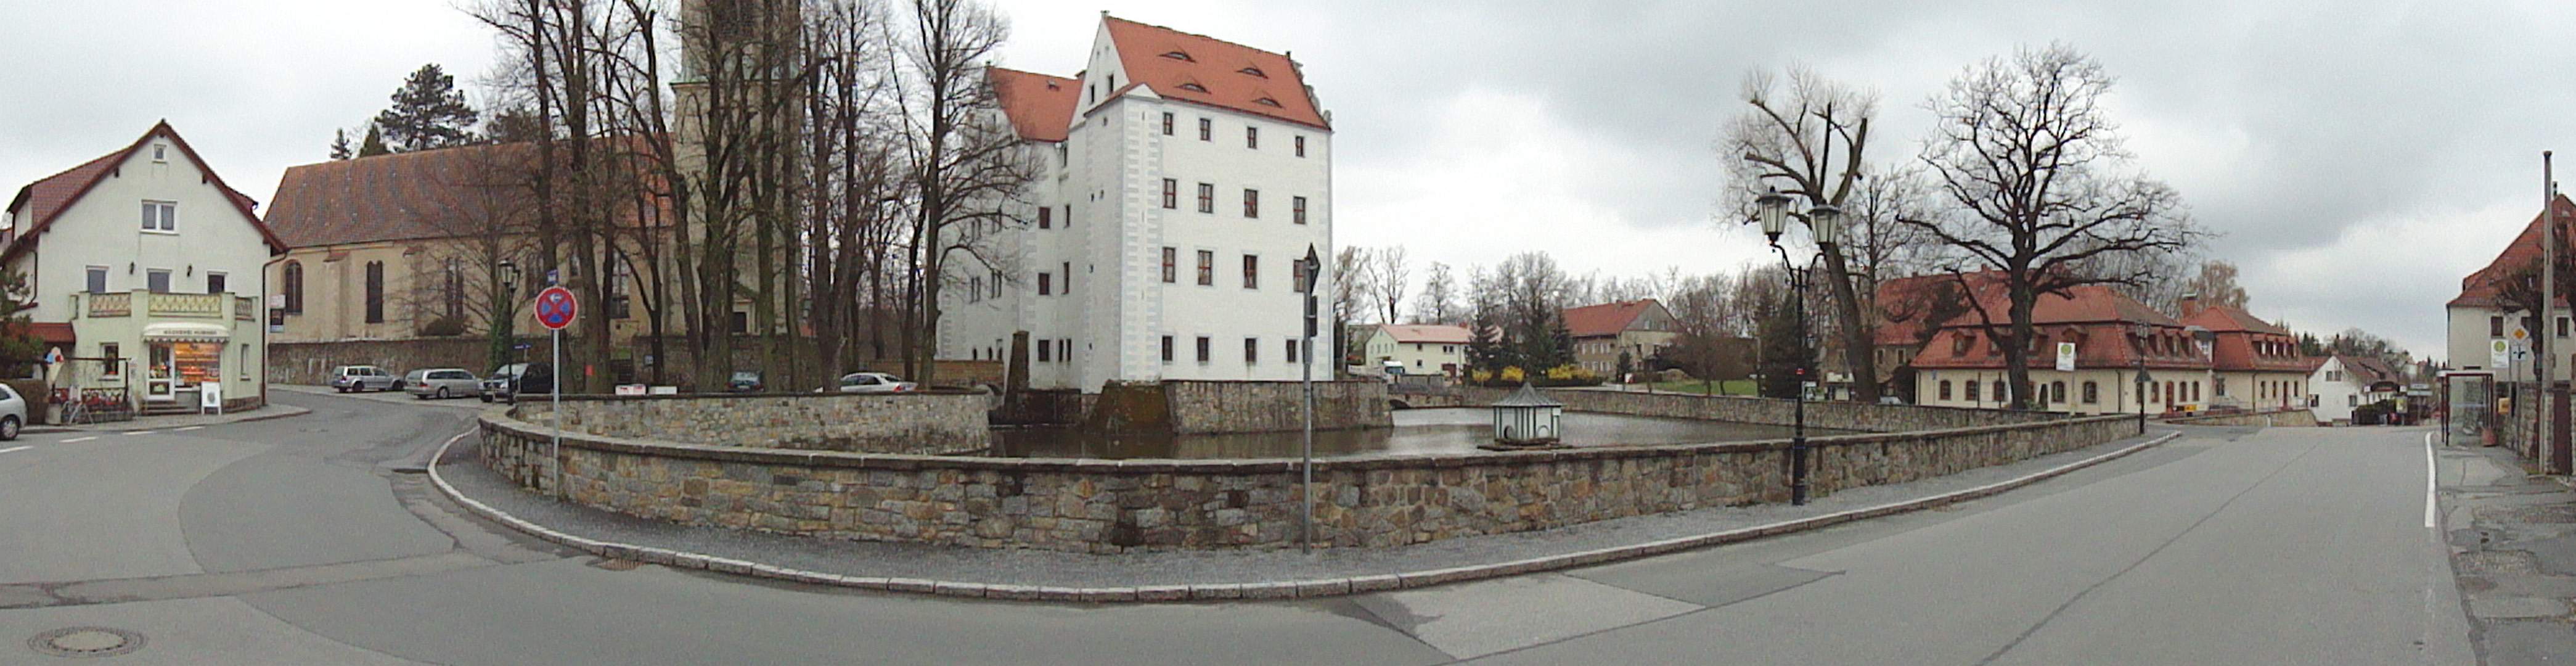 Panorama am Schloss Schönfeld-Weißig